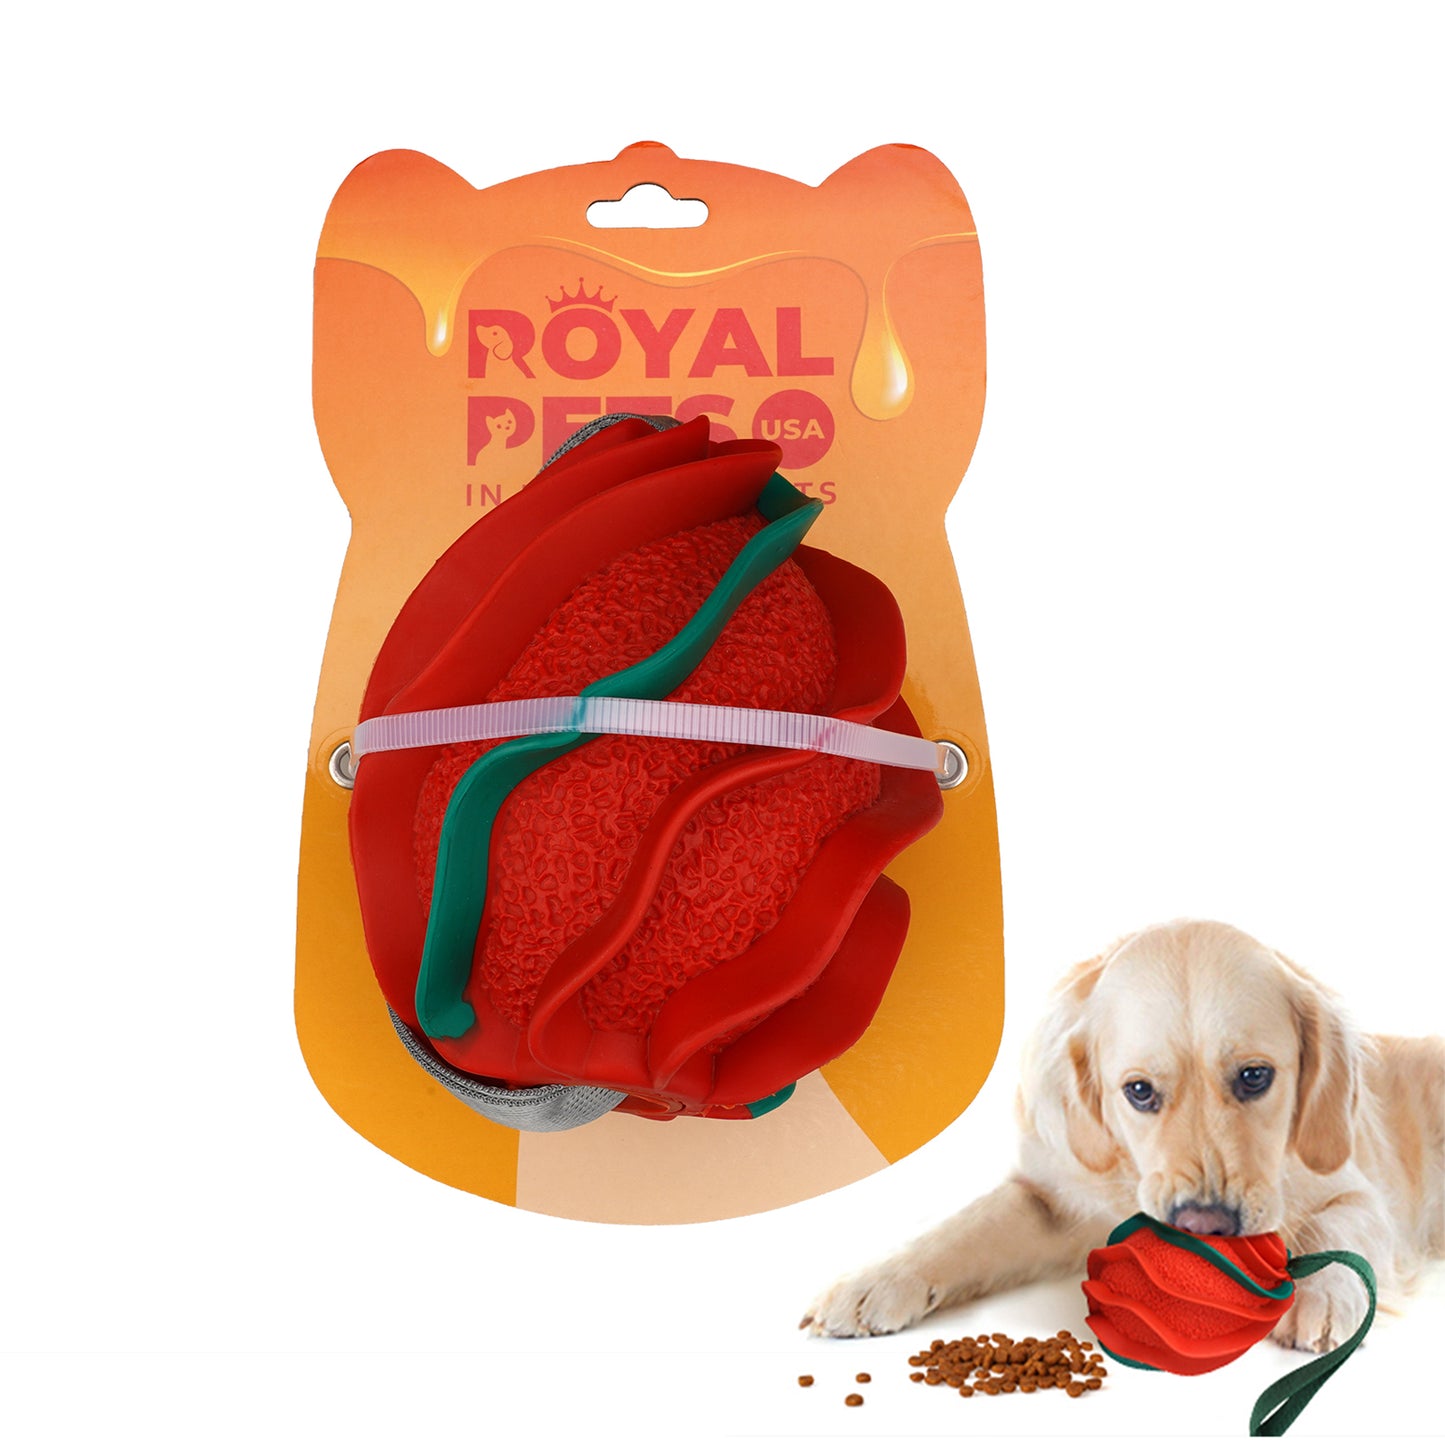 Juguete para perros Royal Pets de alta calidad e indestructible